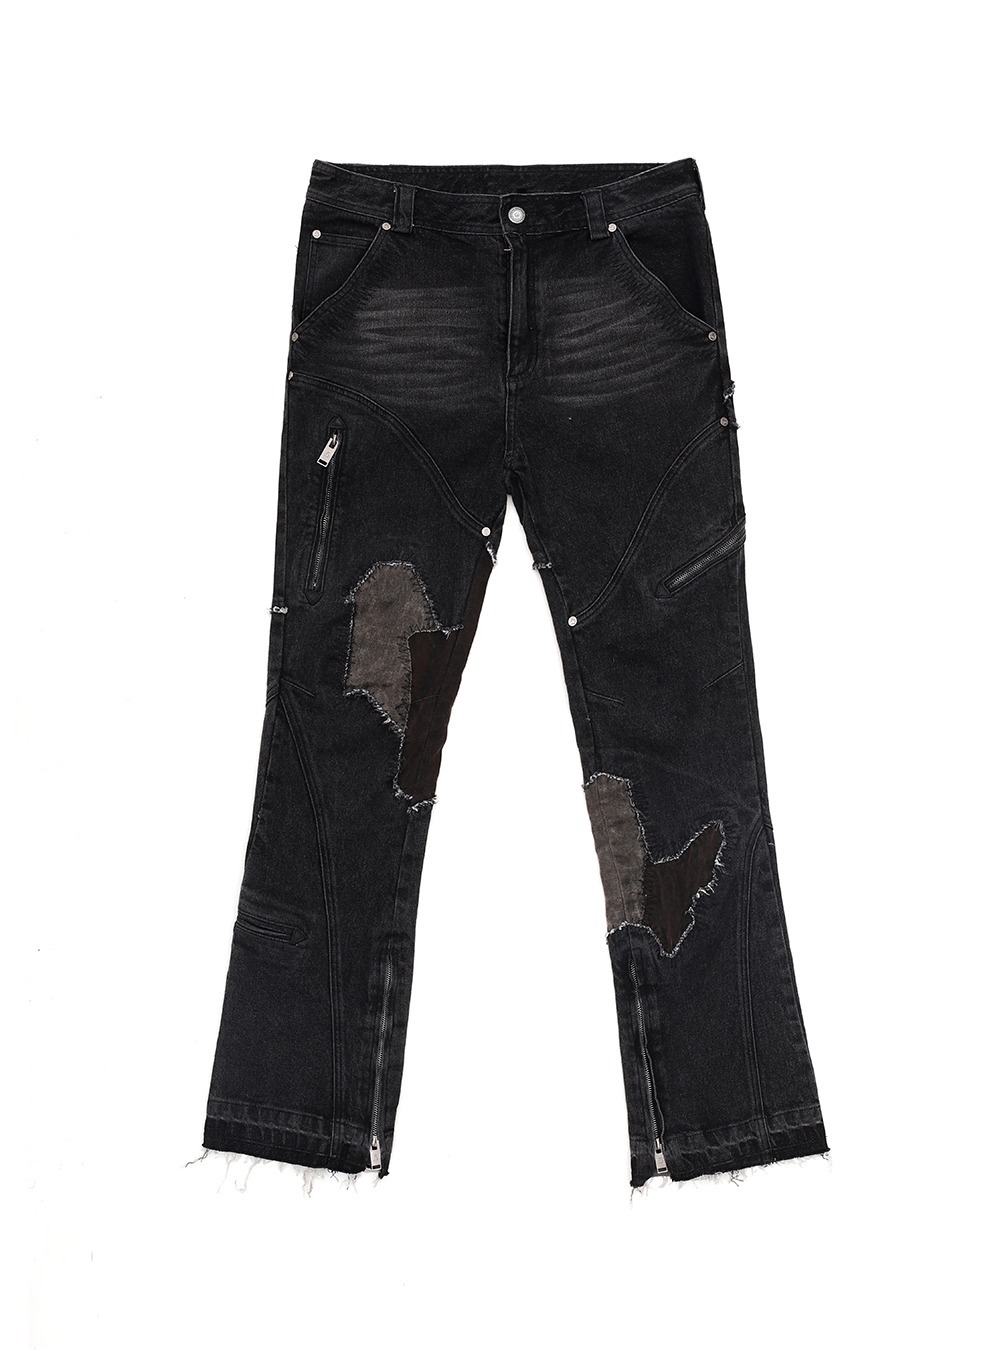 [D5OVE] Craggy Original Design Gap Jeans